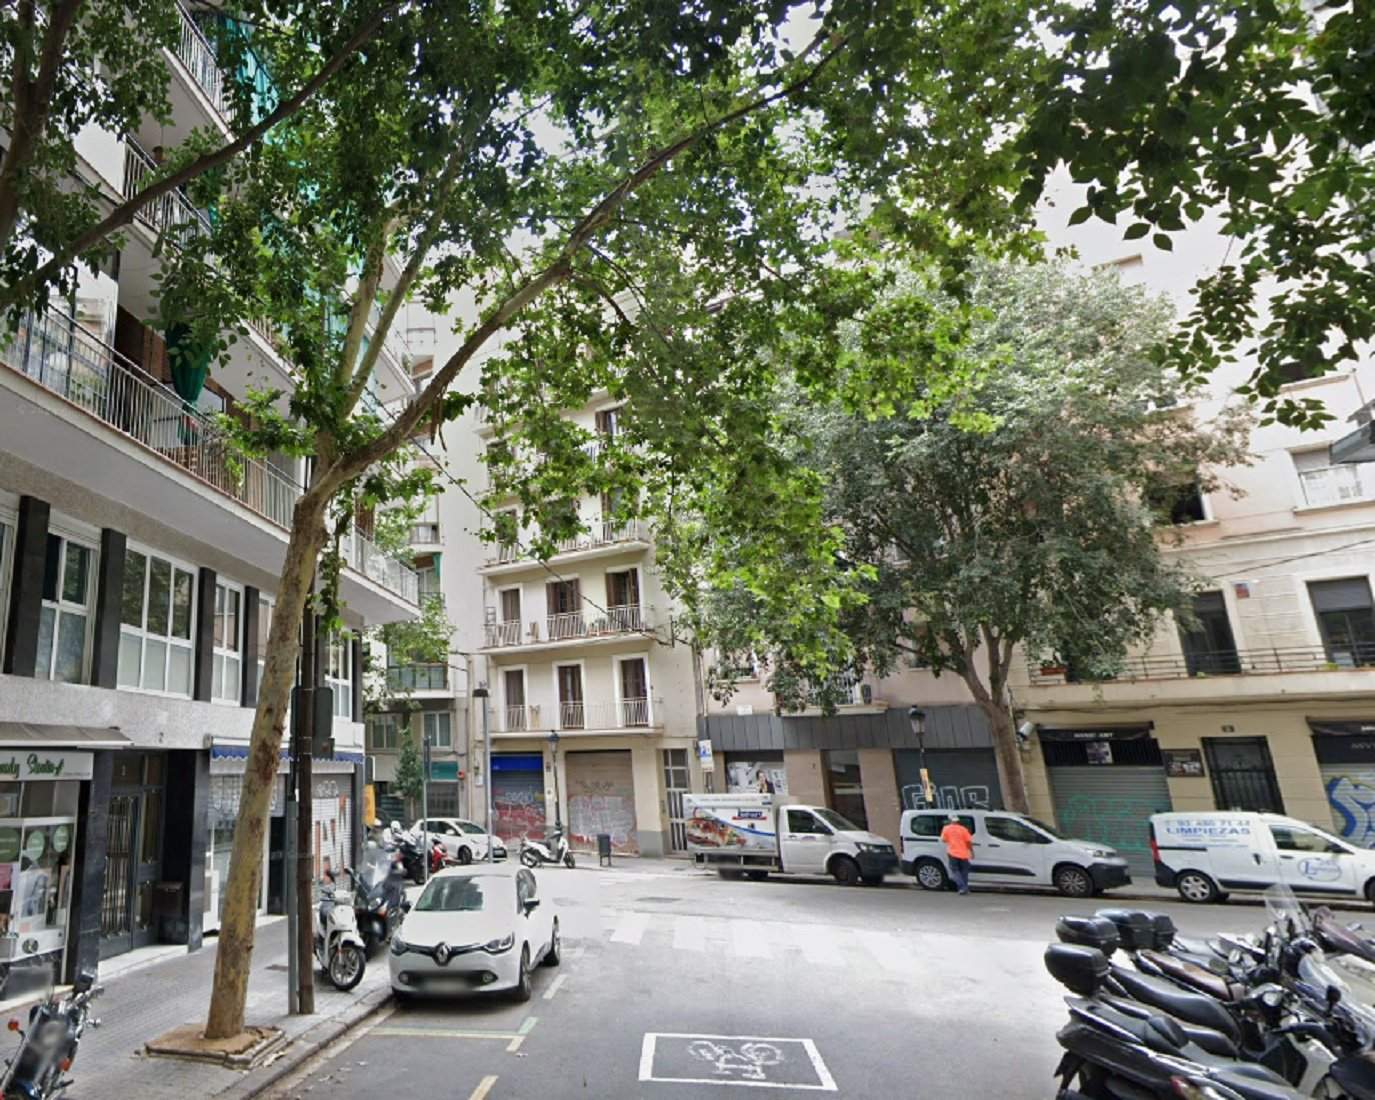 Cau un altre arbre a Barcelona, ara un plataner de més de vint metres a les Corts